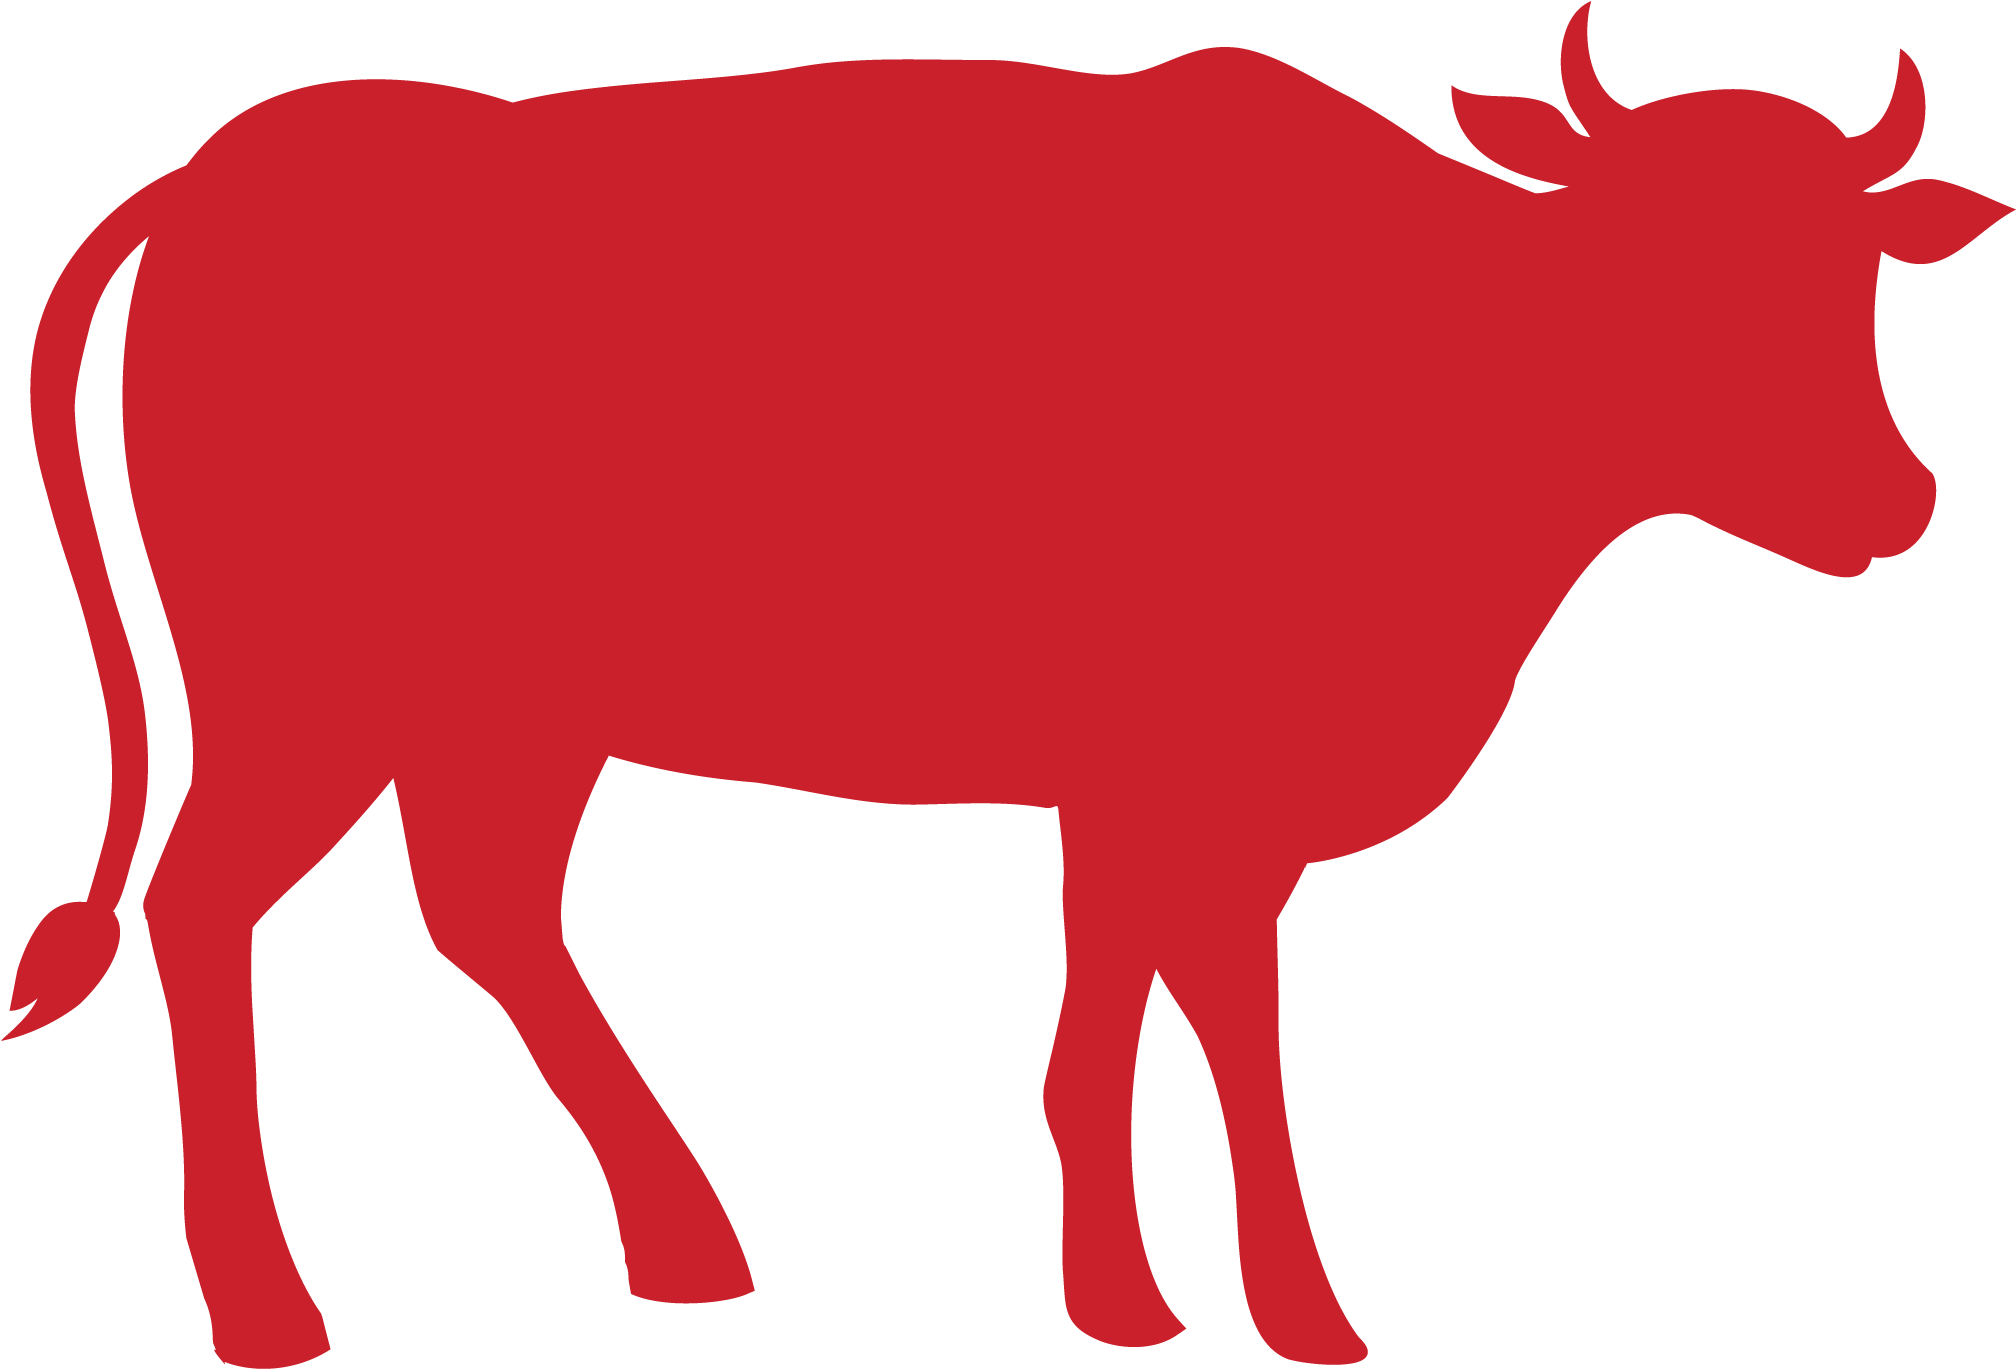 Beef - Beef (2362x1654)